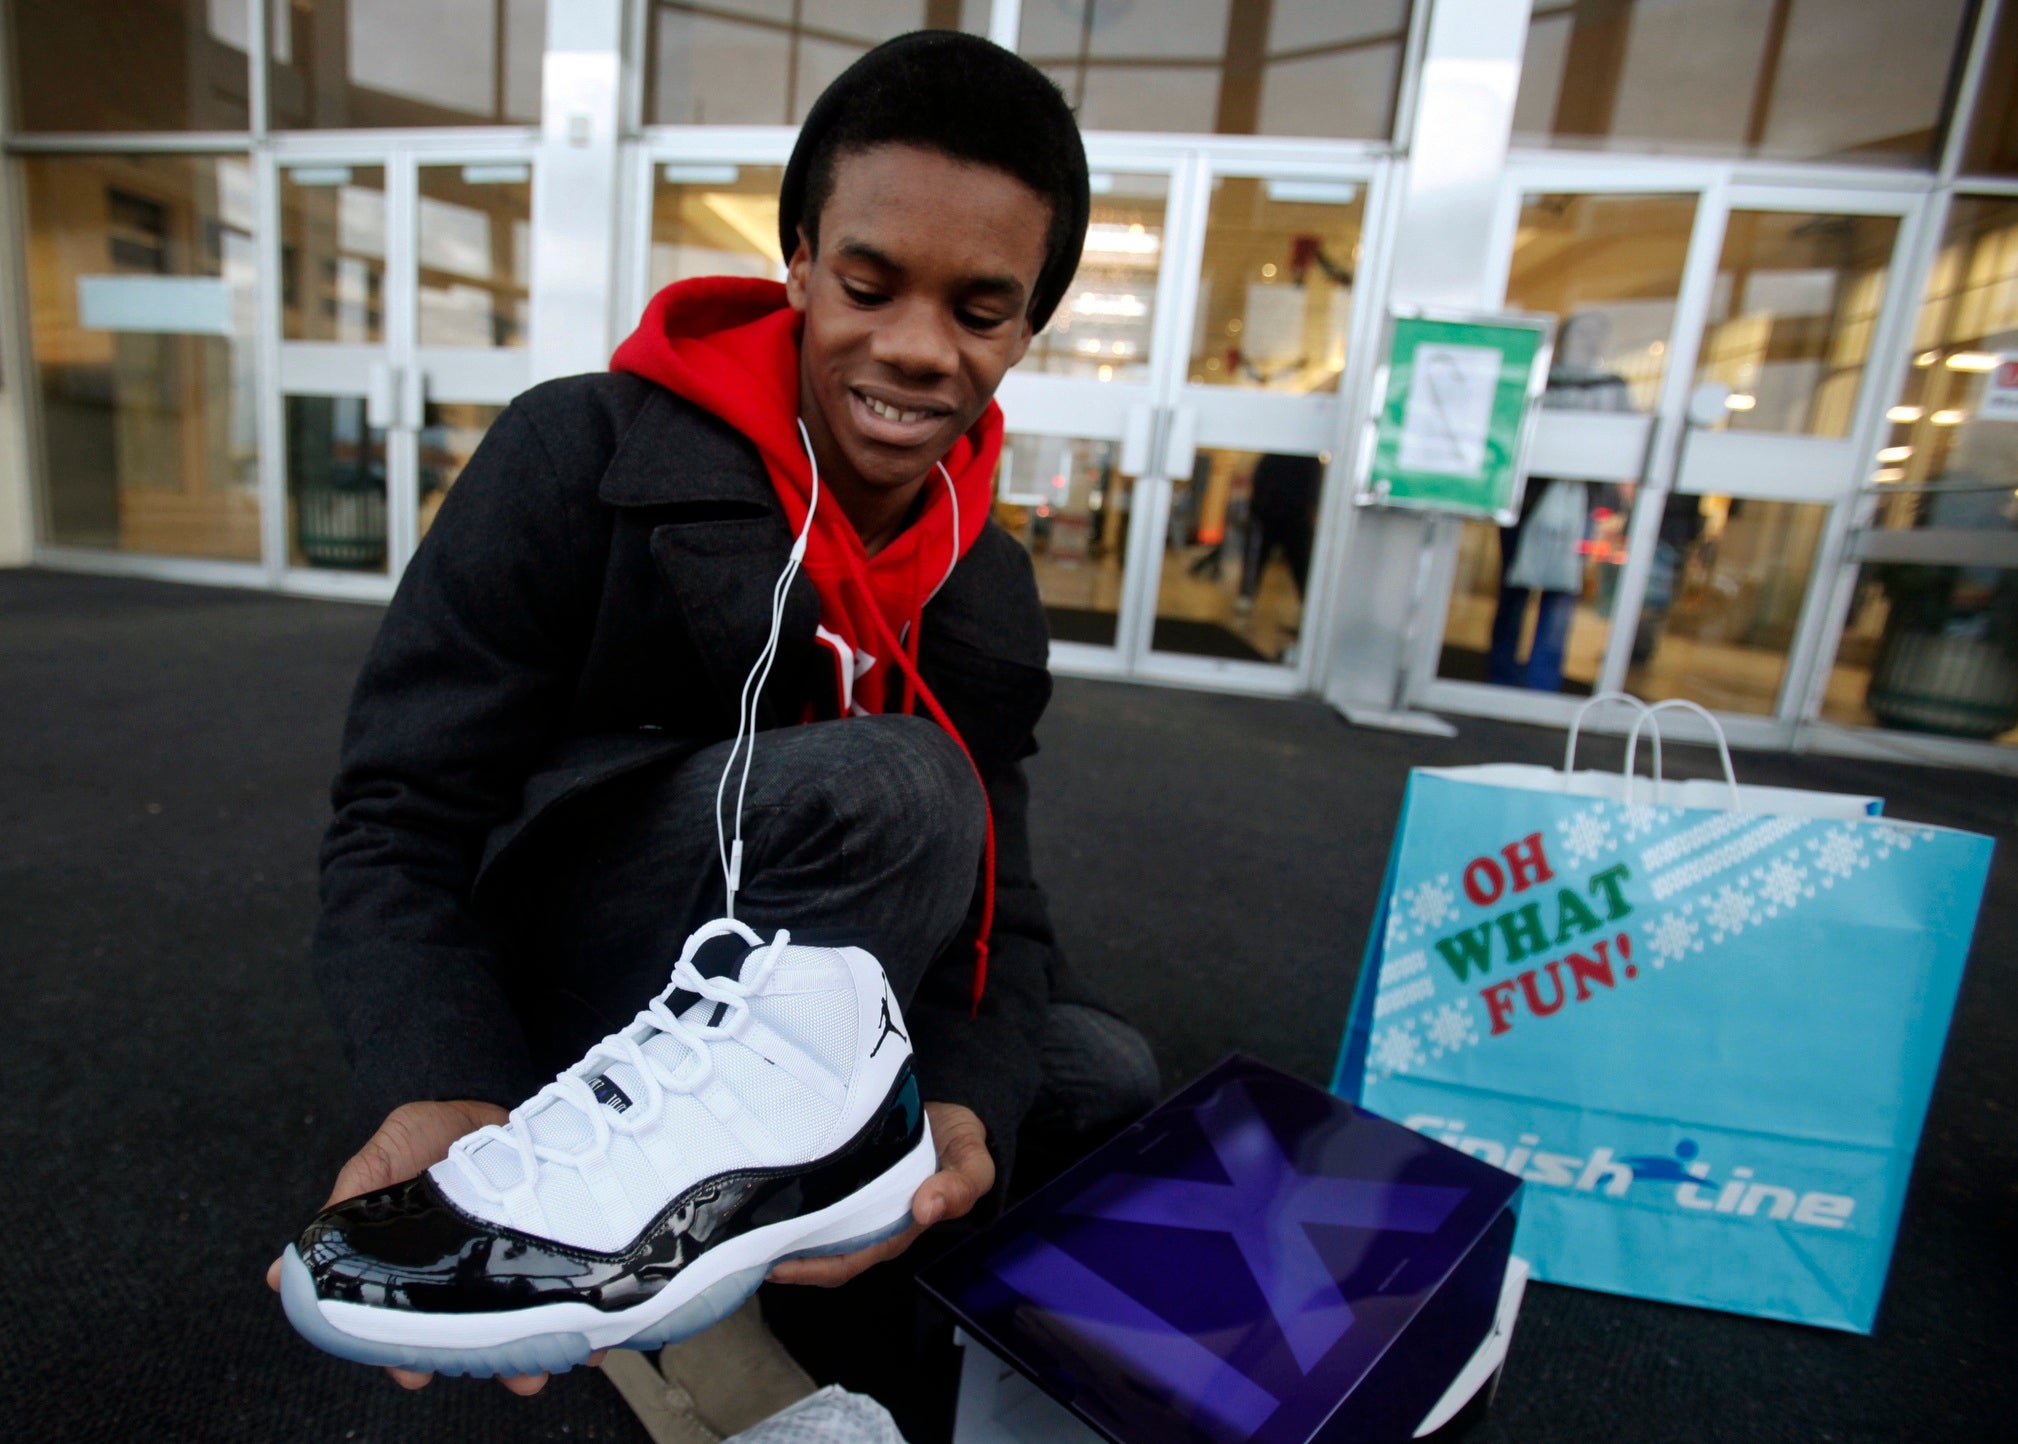 Air Jordan Shoppers, You Must Do Better